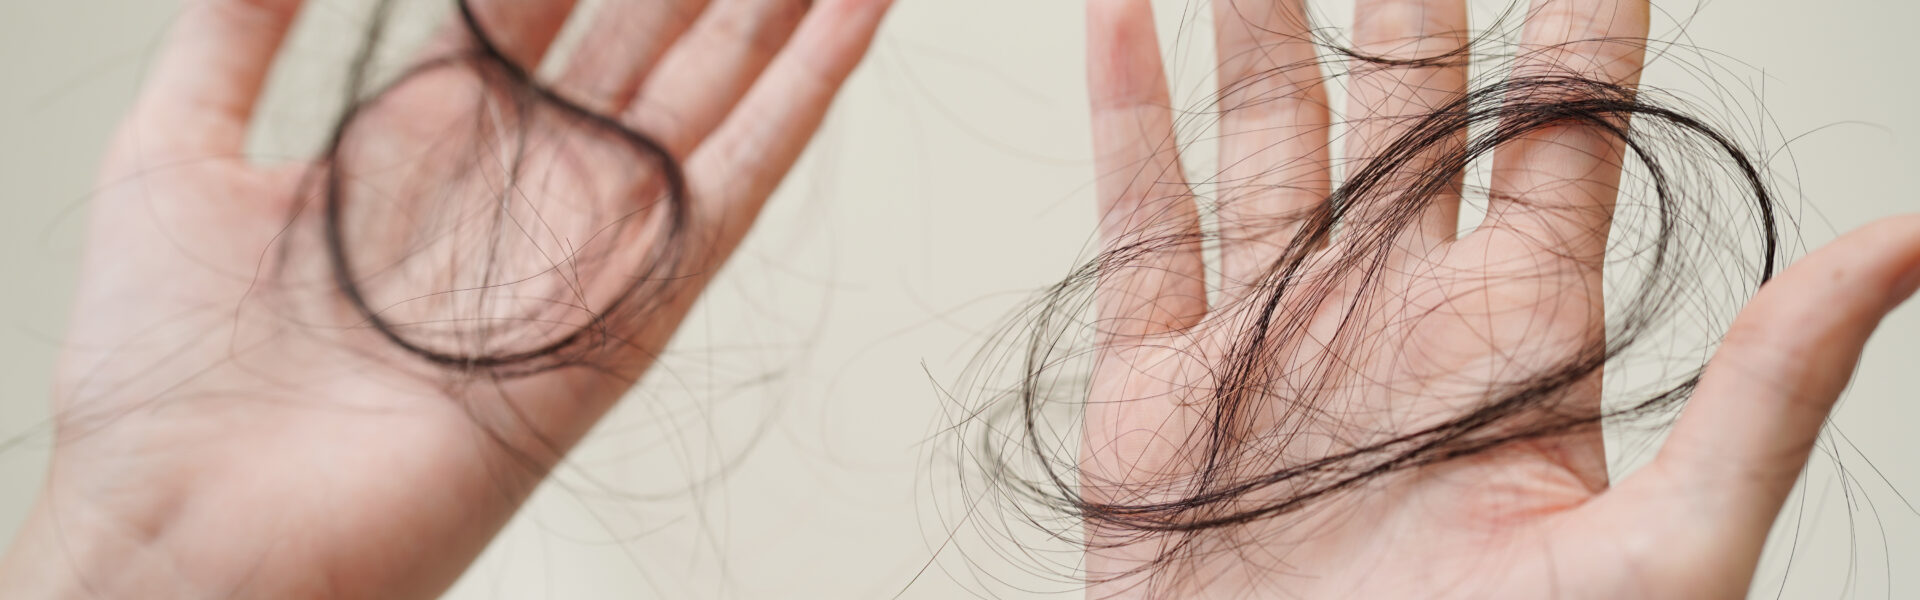 Przedstawione zdjęcie ukazuje dłonie kobiety, która trzyma wypadające włosy z głowy. Włosy są cienkie i rzadkie, co może sugerować problem z ich wypadaniem. Kolor skóry na zdjęciu wskazuje, że dłonie należą do kobiety o jasnej karnacji